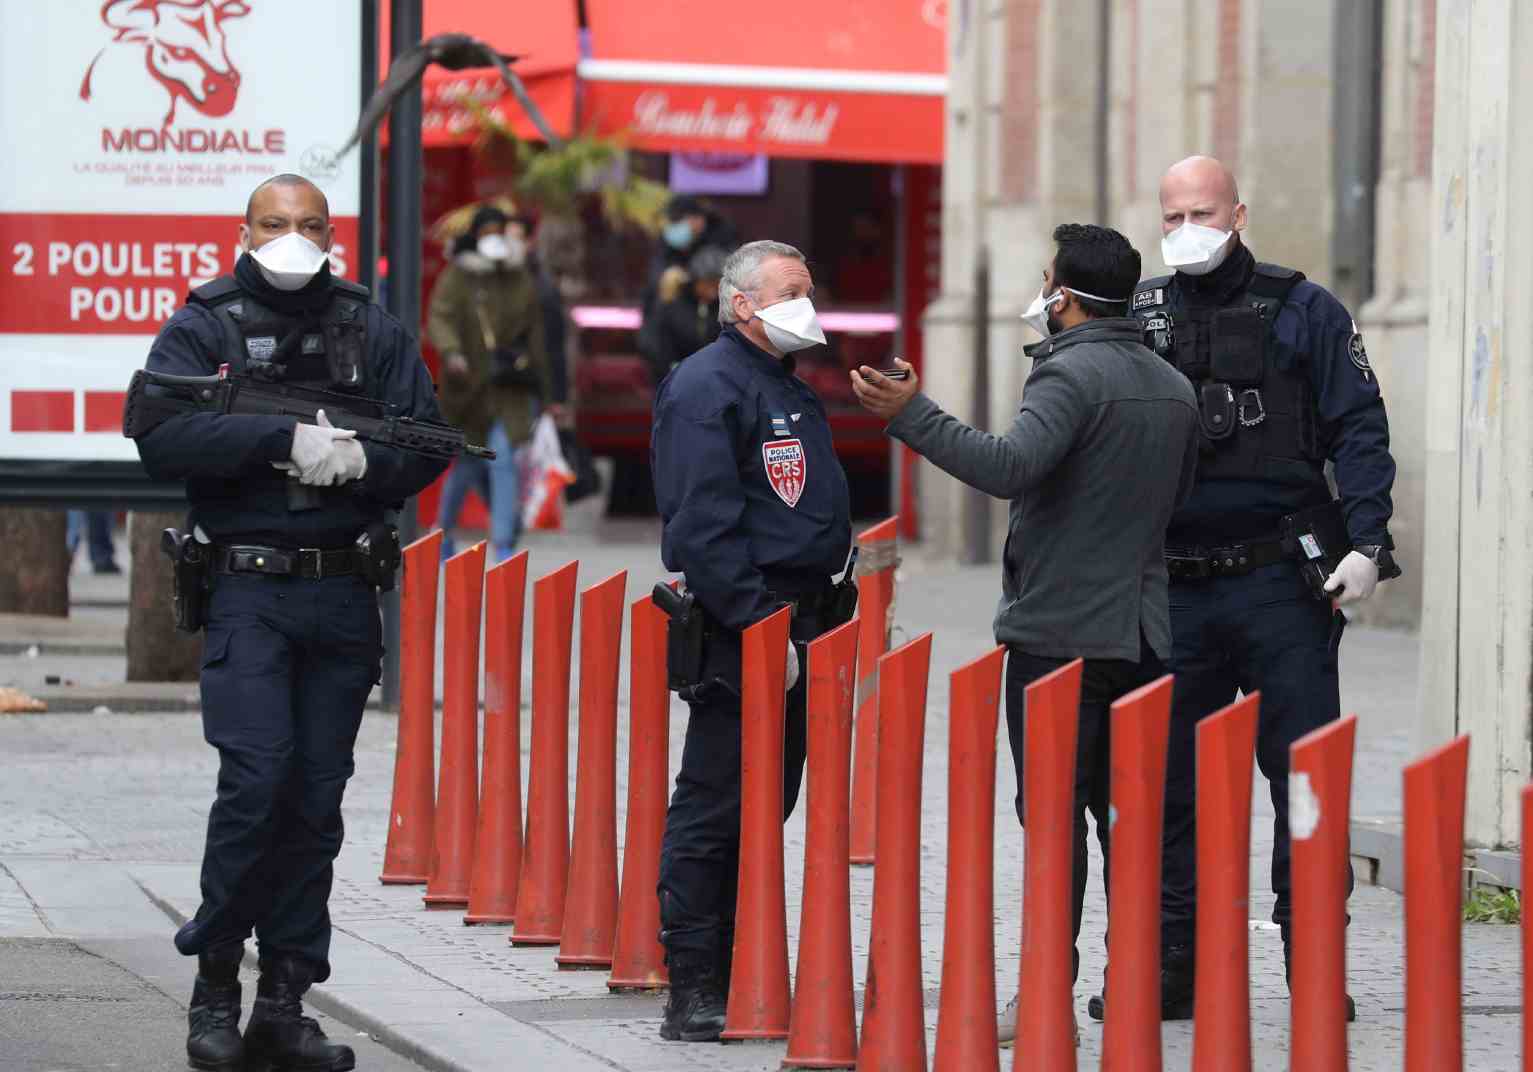 مكافحة الإرهاب ـ تحذيرات من من تهديد إرهابي عالي المستوى في فرنسا